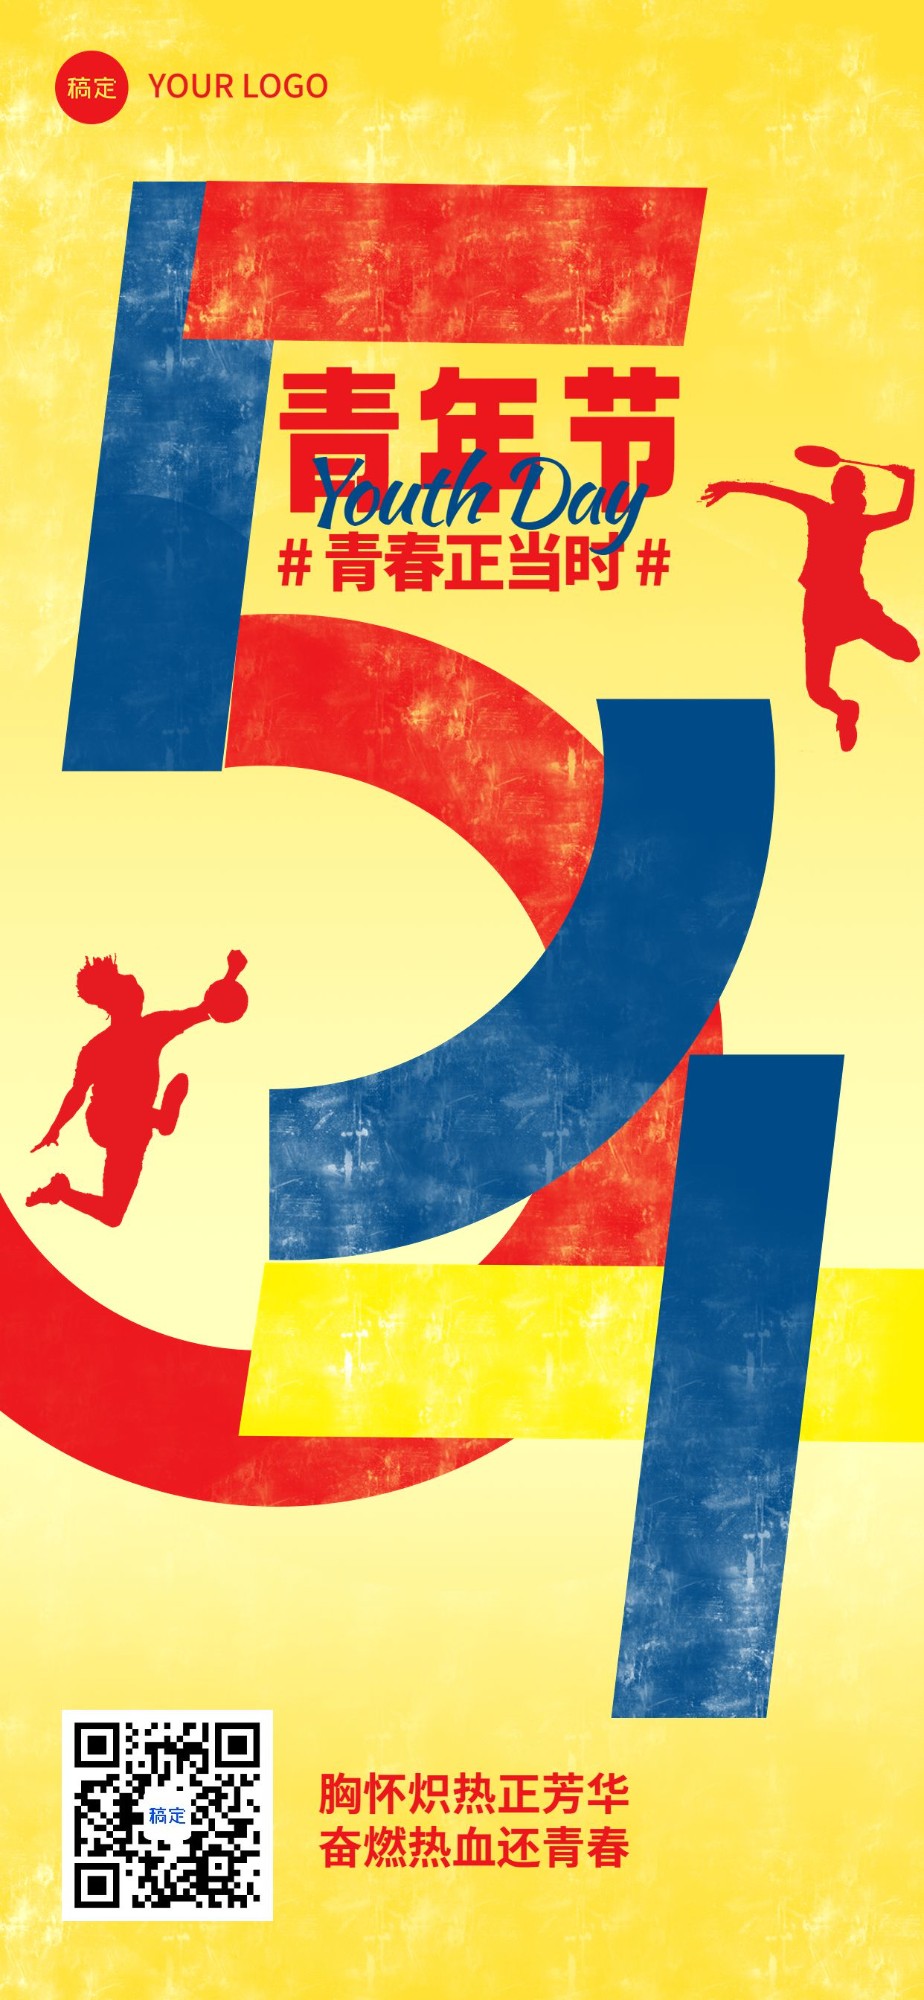 企业青年节节日祝福大字插画风全屏竖版海报